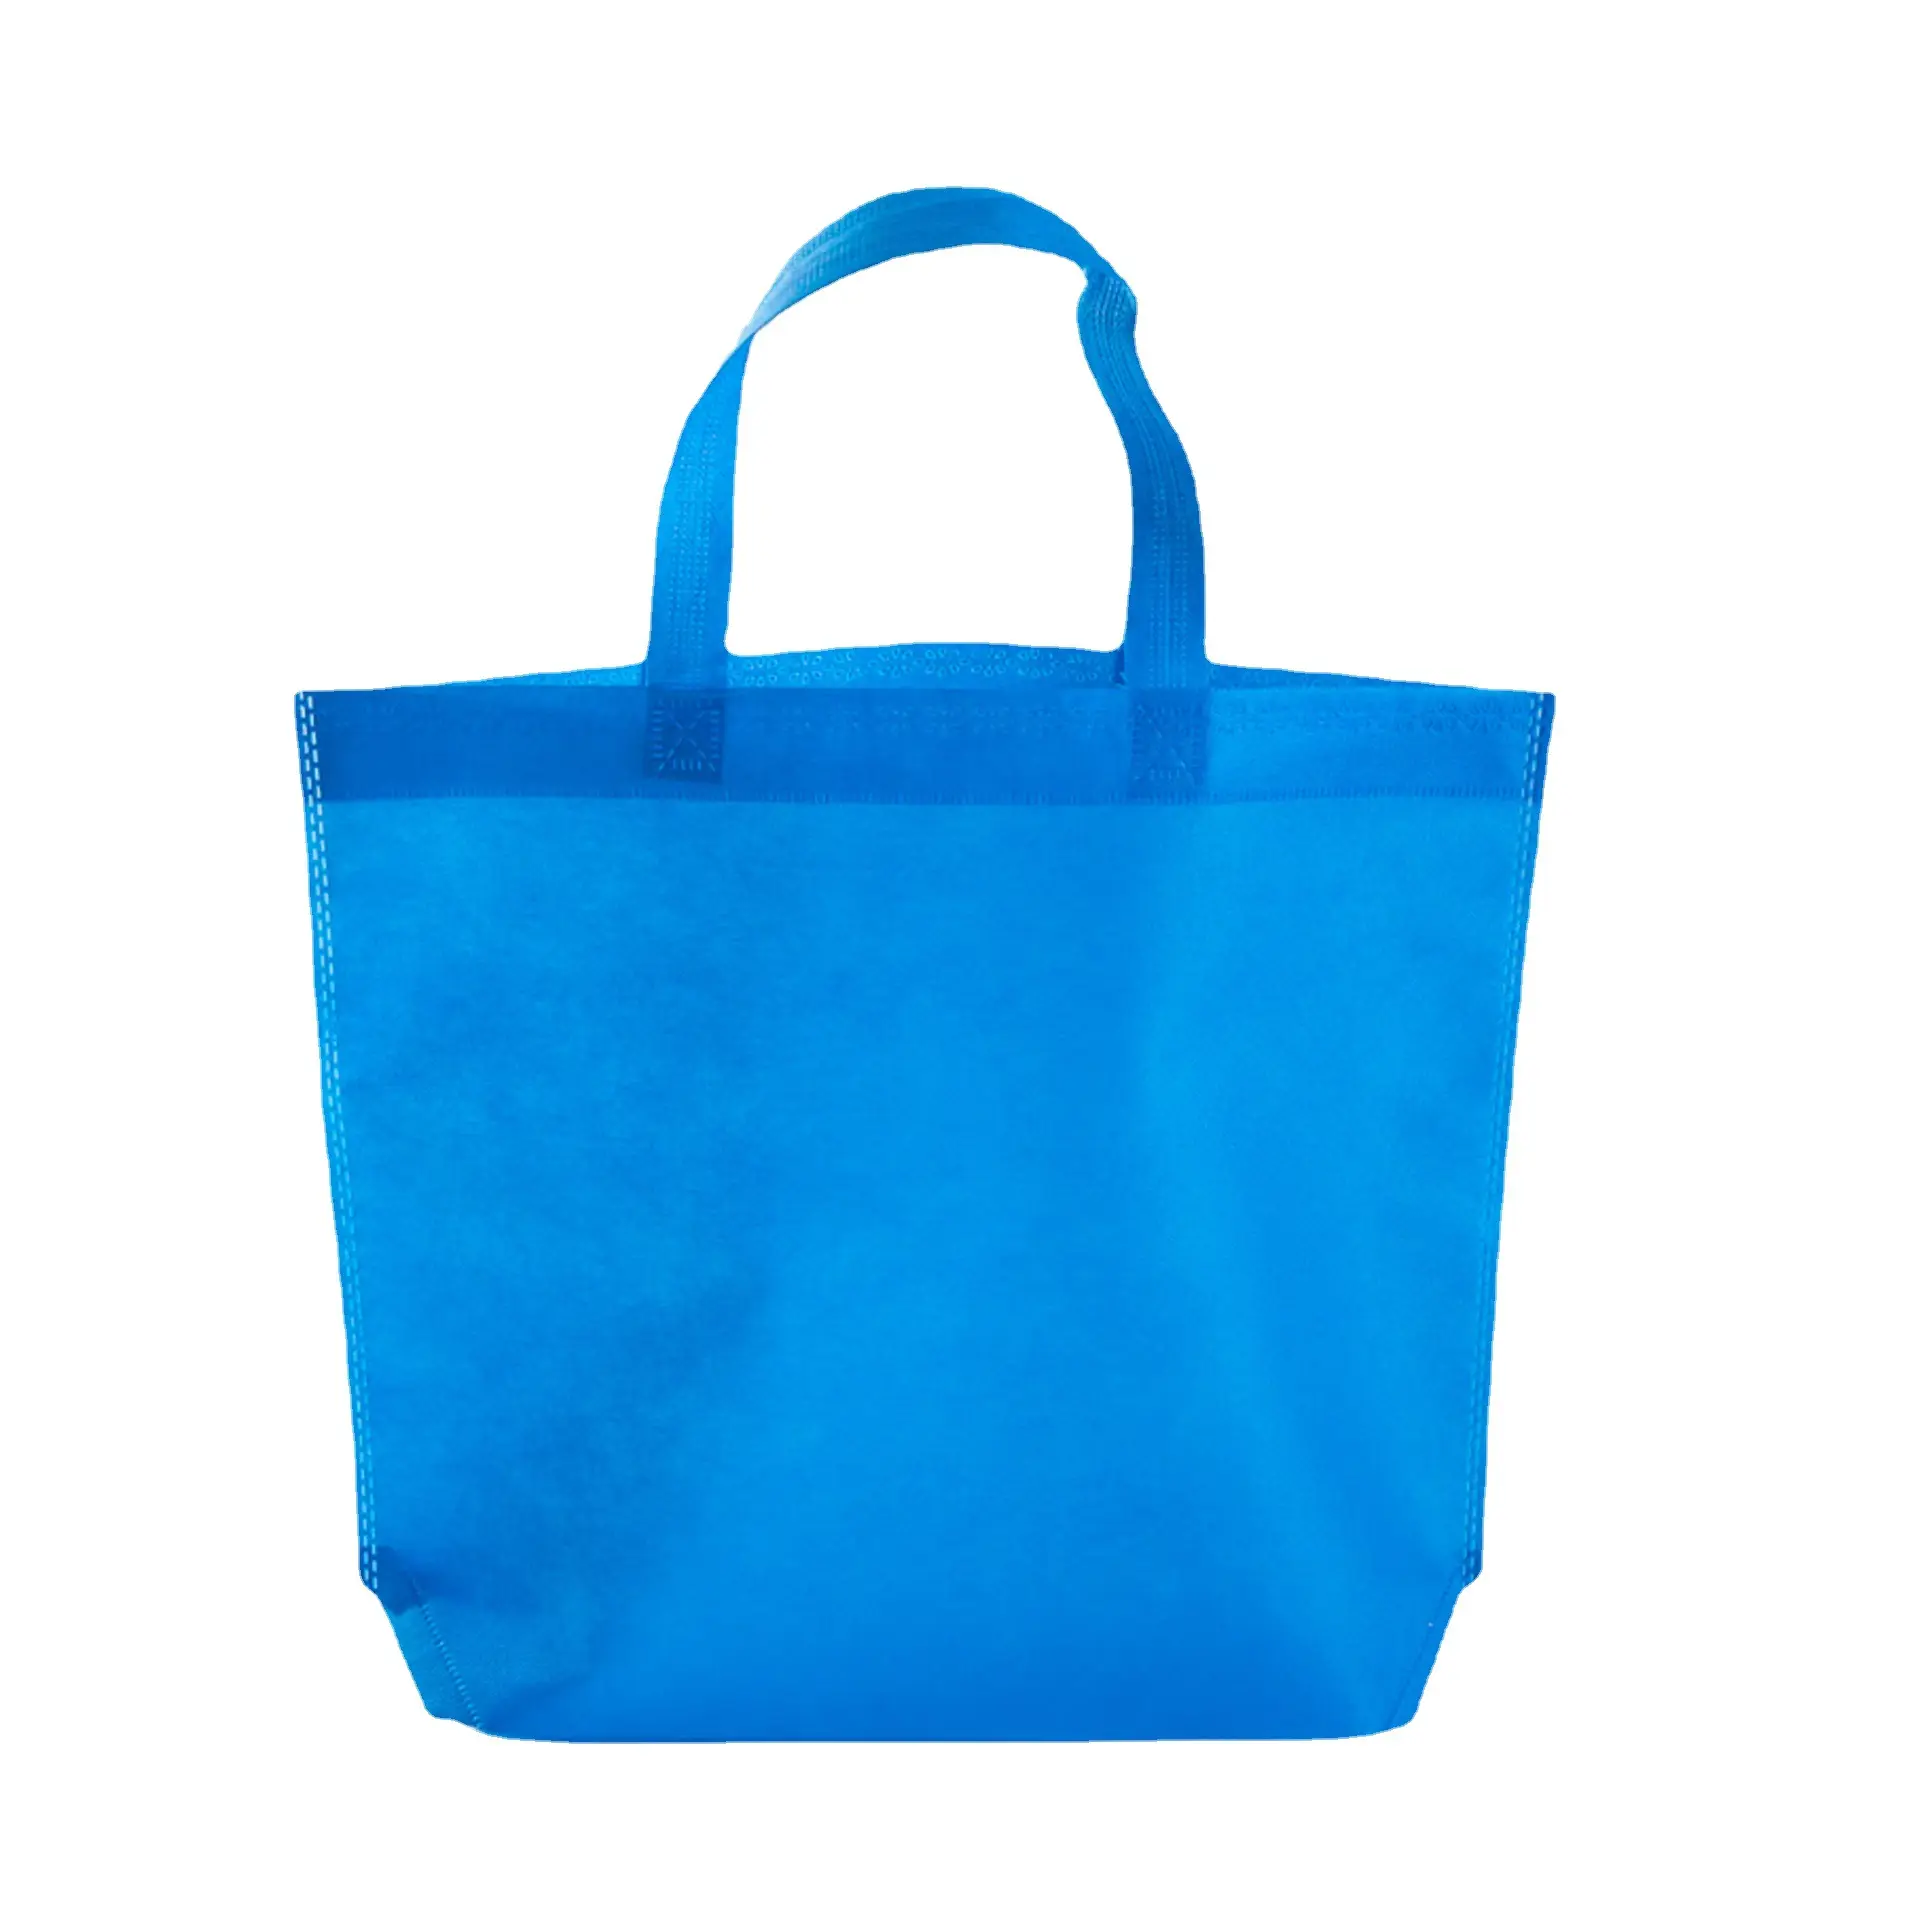 Geri dönüşümlü kumaş olmayan dokuma alışveriş çantaları toptan ucuz tote çanta özel baskılı logo taşıma çantaları